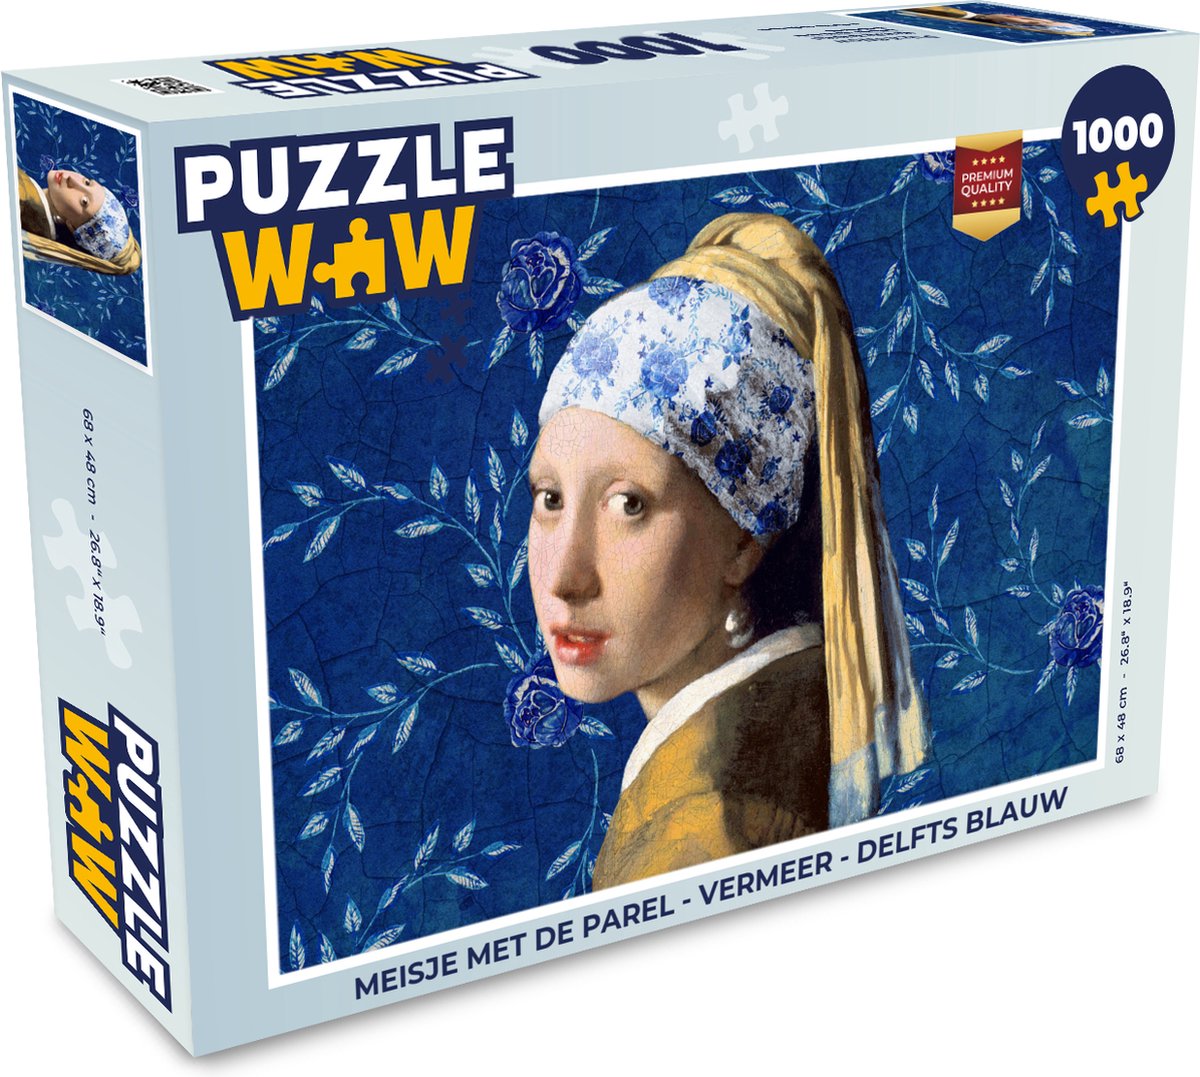 Puzzel Meisje met de parel - Delfts blauw - Vermeer - Bloemen - Schilderij  - Oude... | bol.com